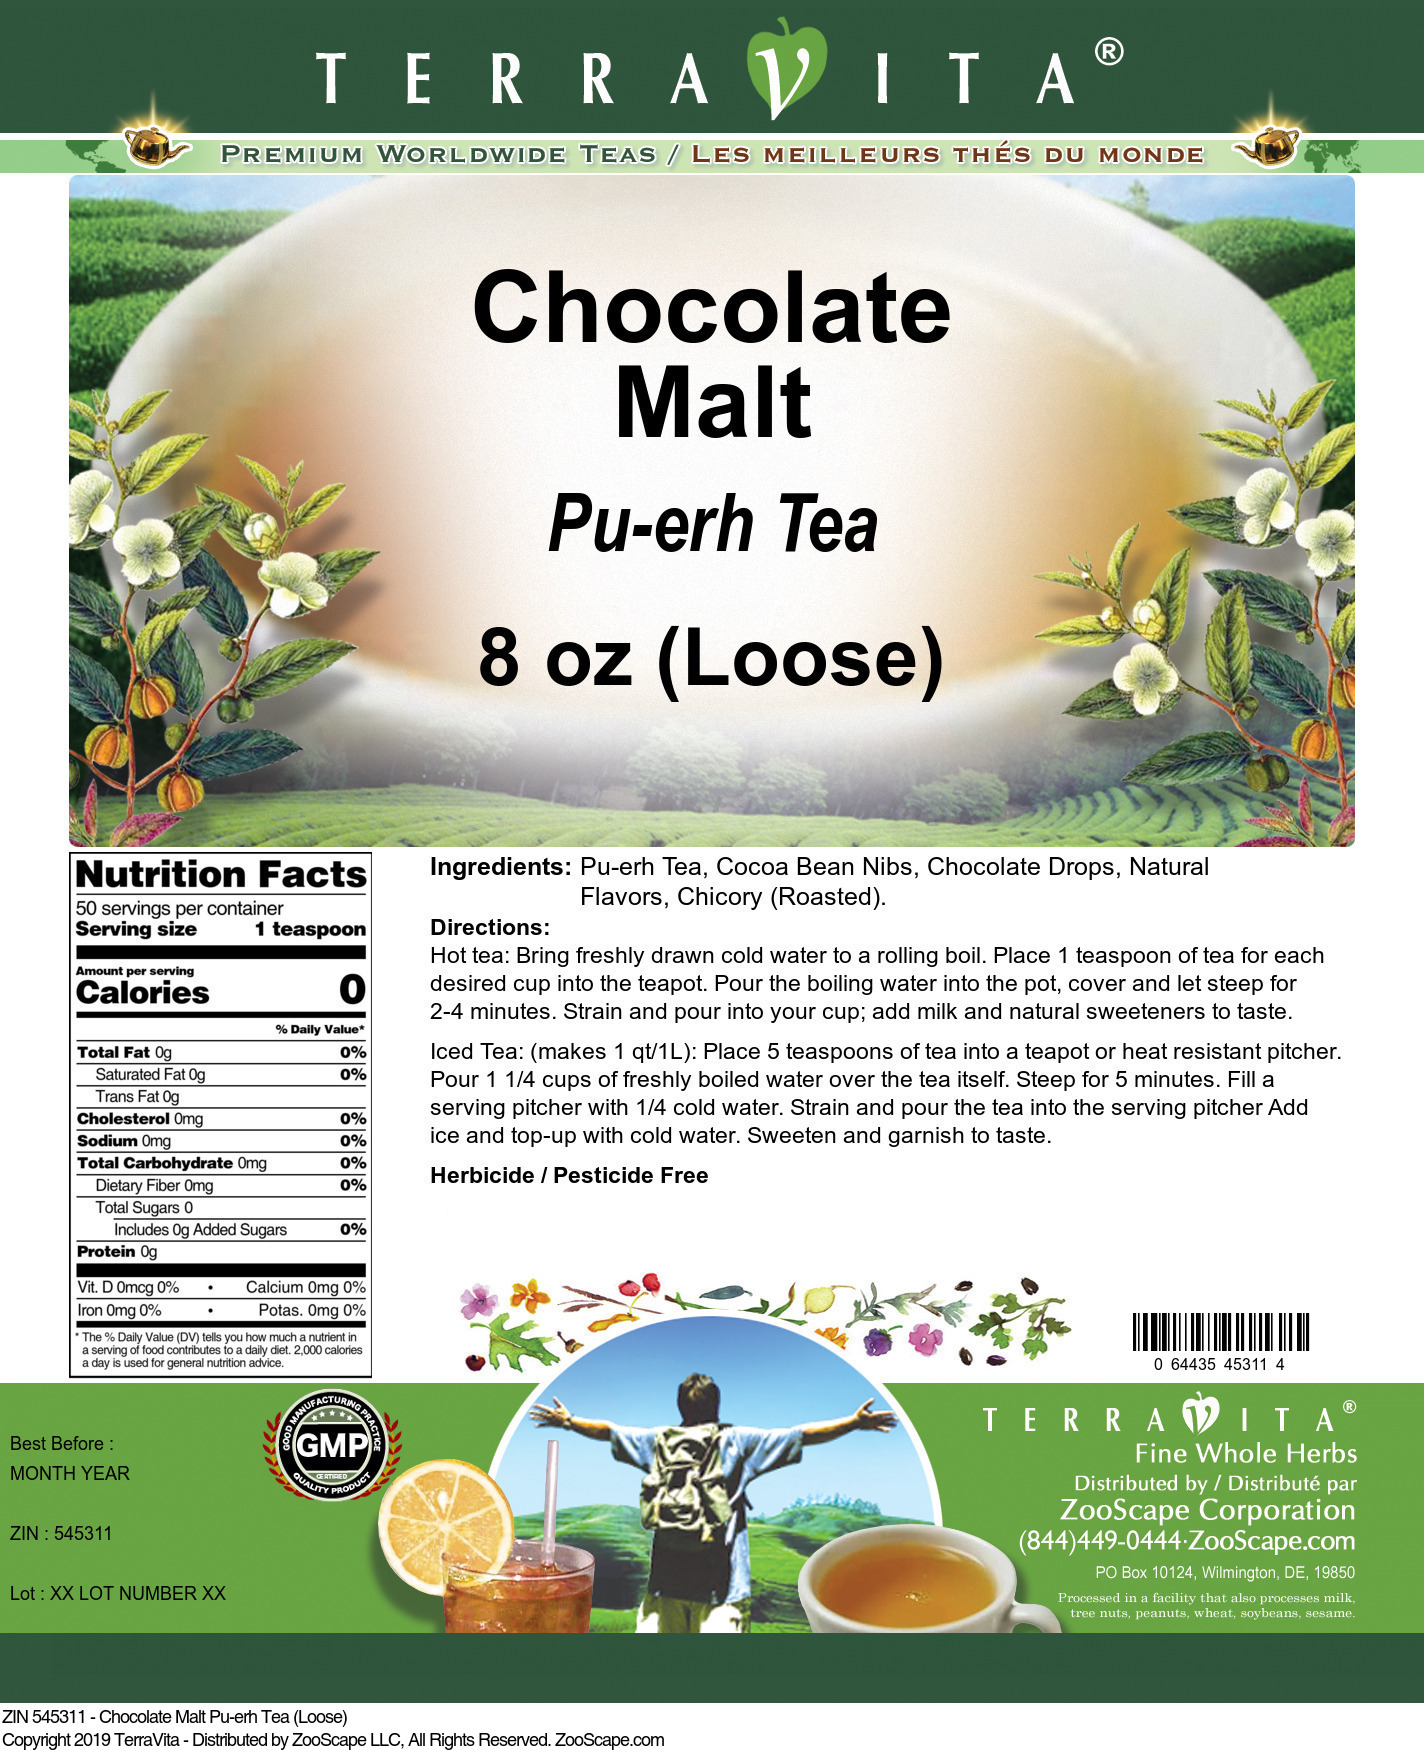 Chocolate Malt Pu-erh Tea (Loose) - Label